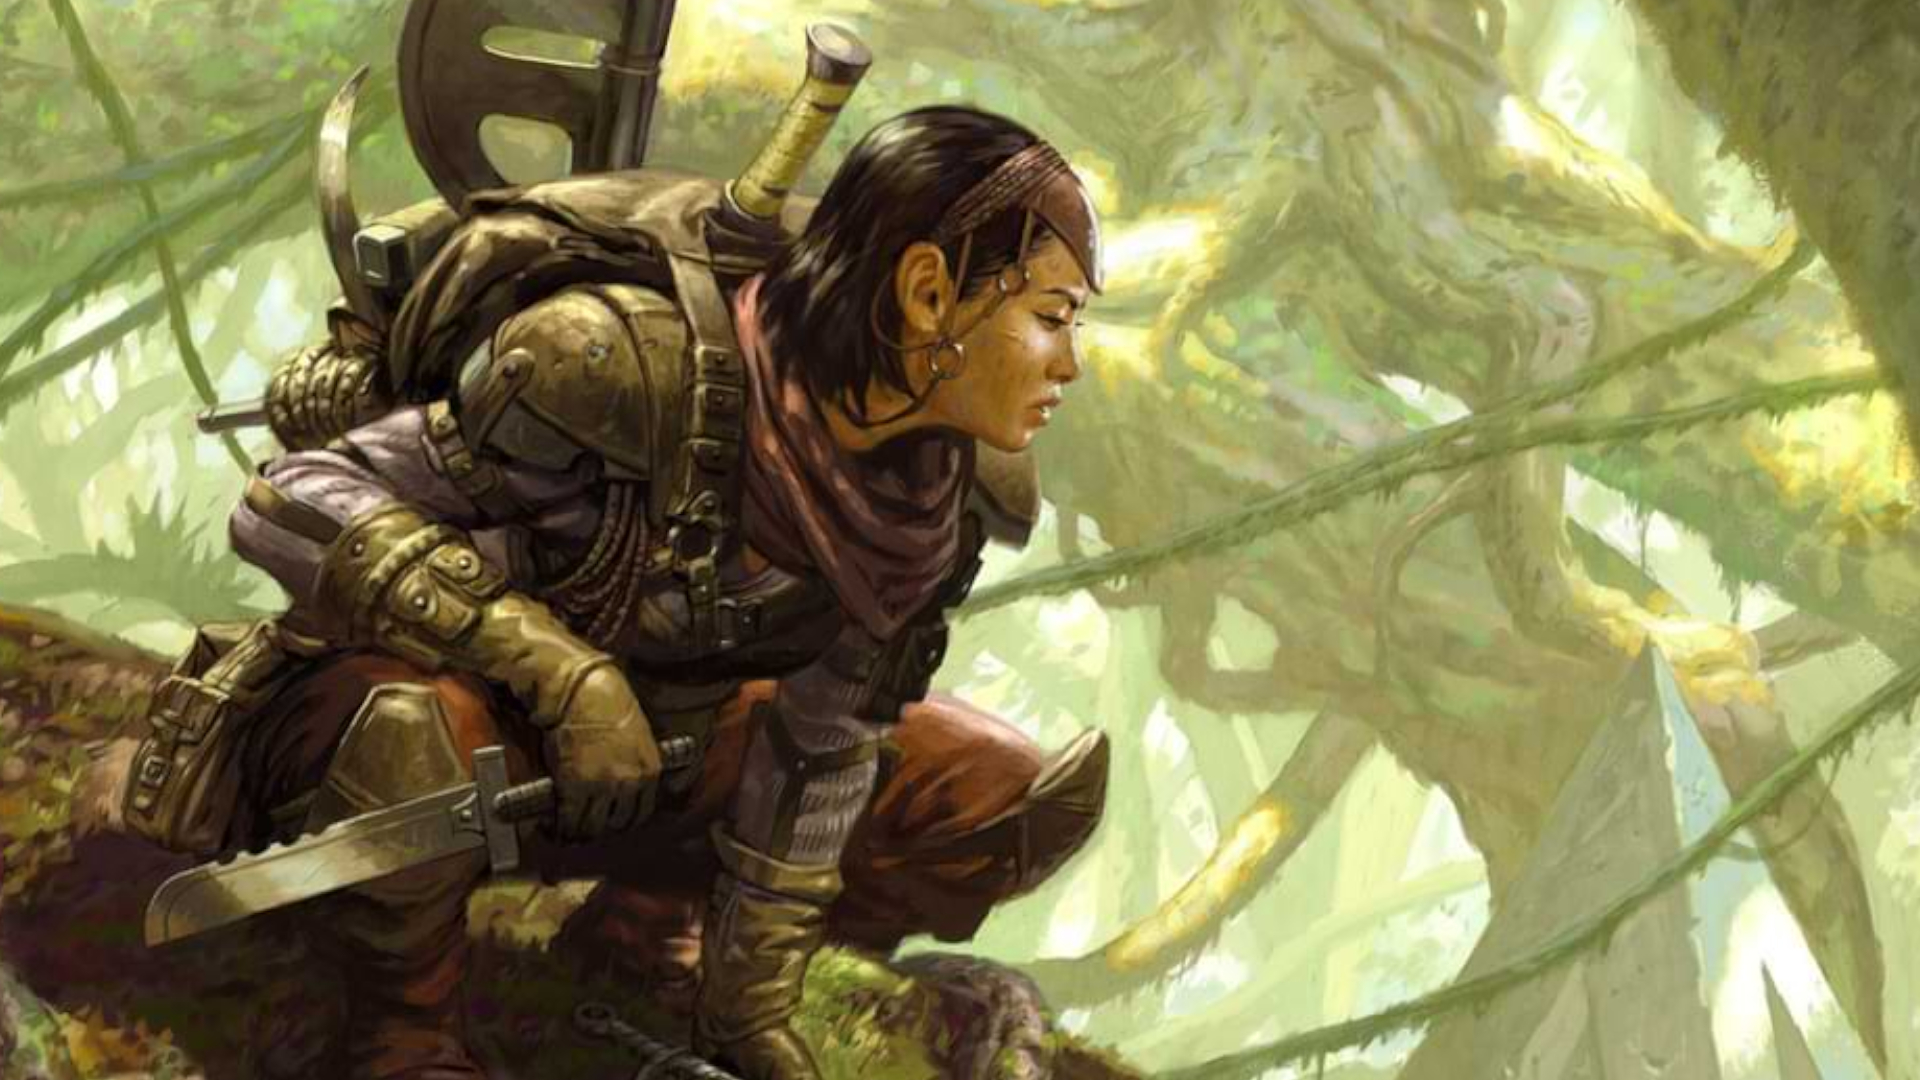 D&D Ranger lauert in den Bäumen und wacht über einen Wald